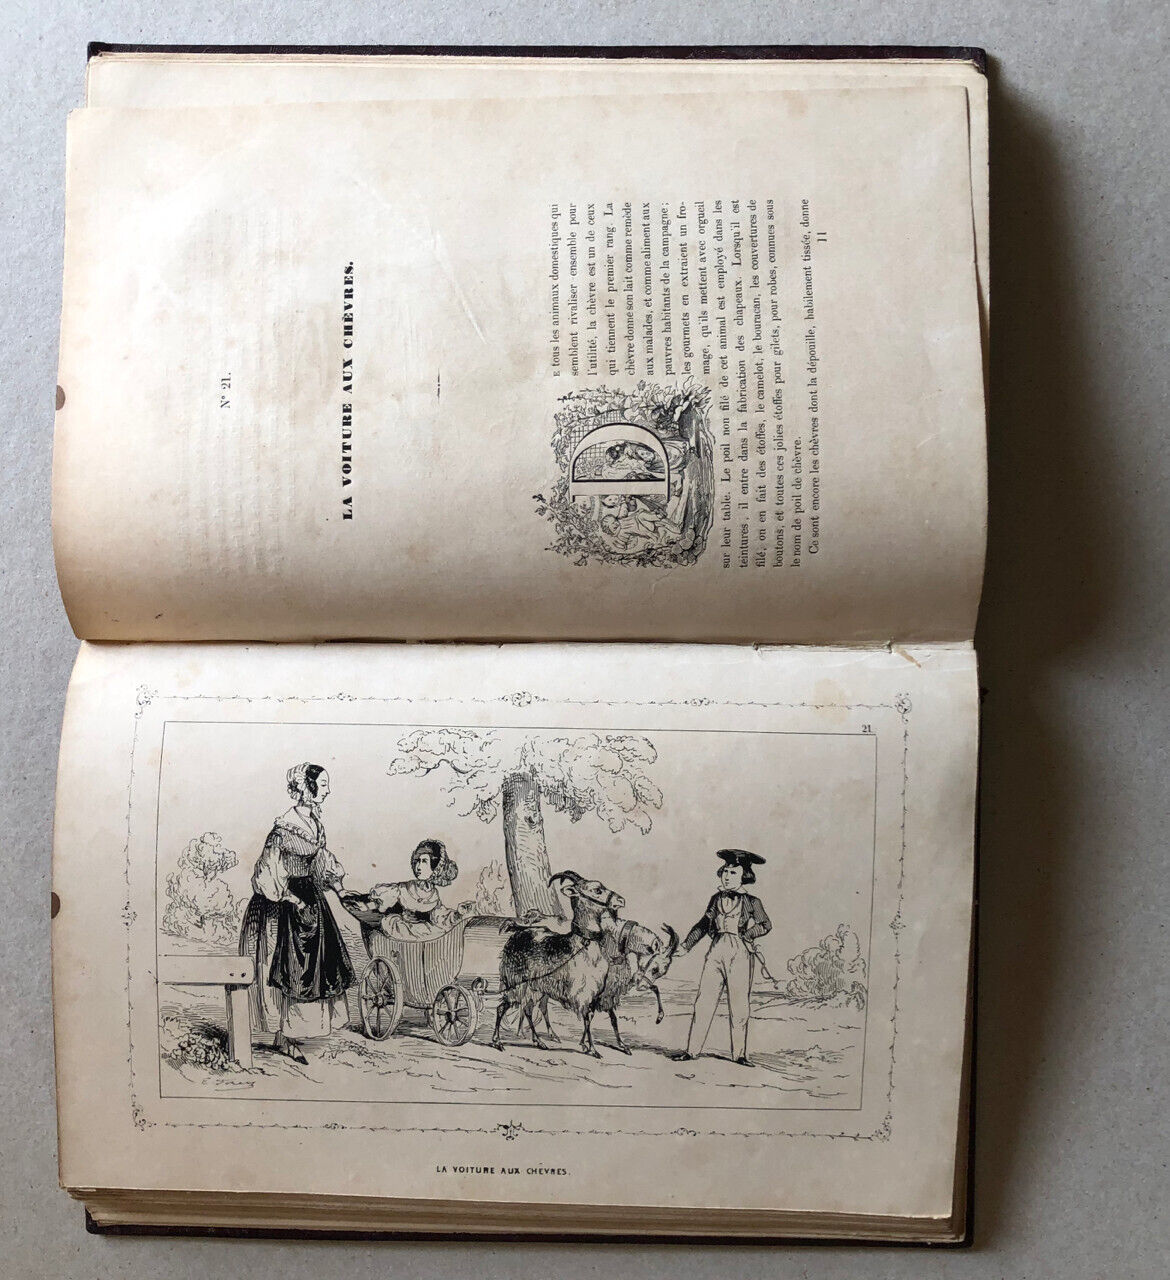 Abbé Laurence de Savigny — Le Bonheur des enfants — 39 litho. h.t. — Aubert 1858